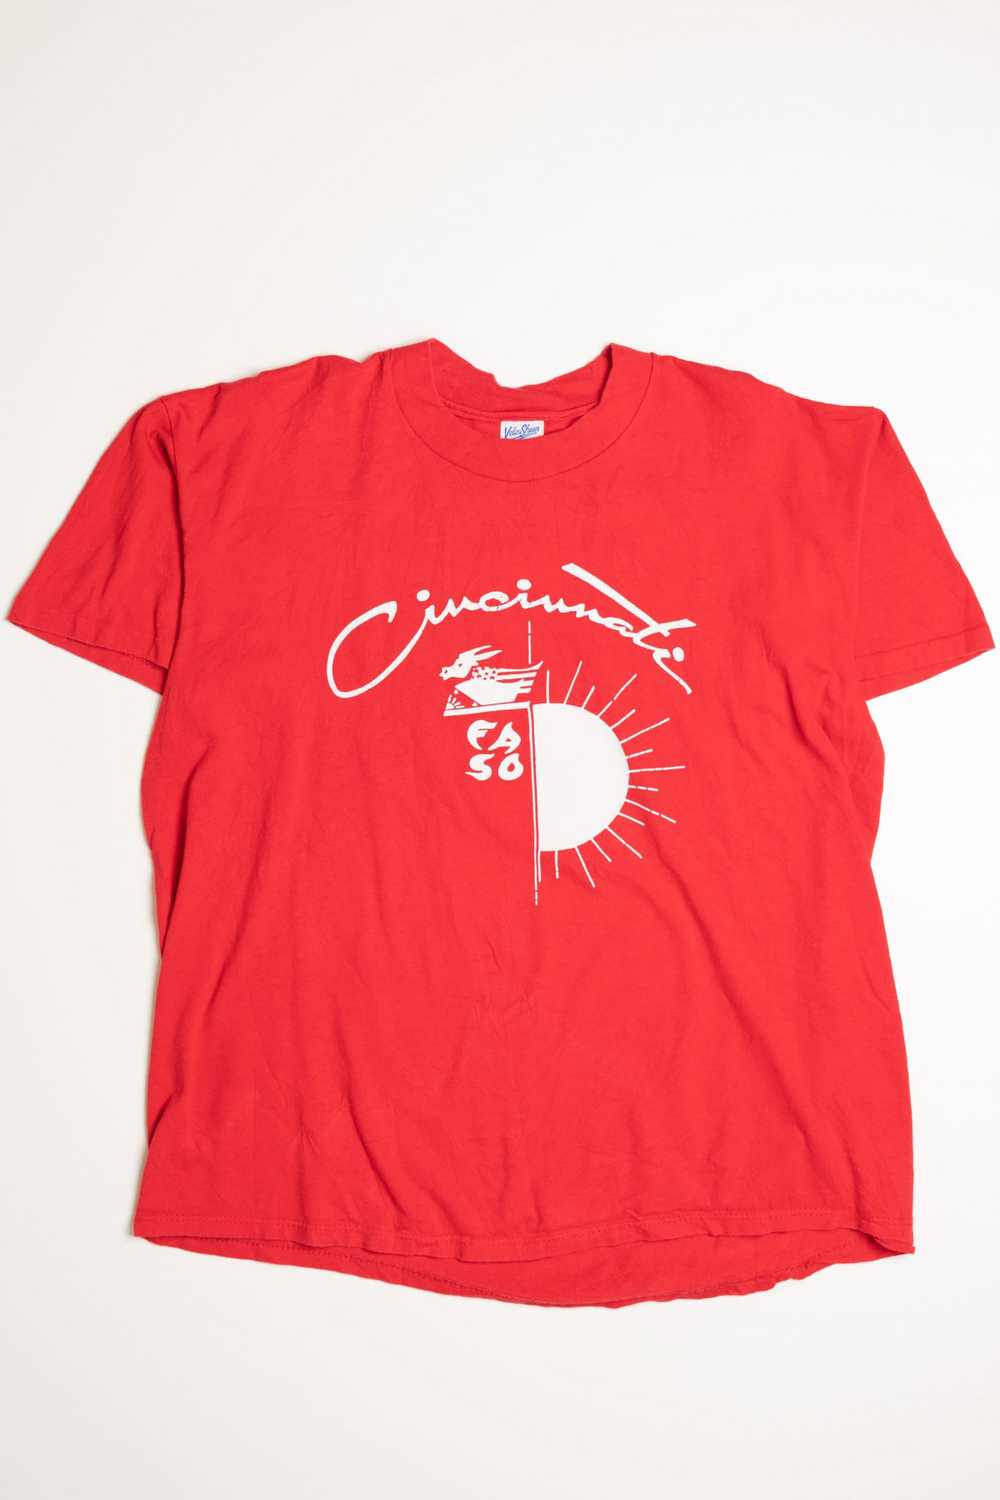 Velva Sheen T-Shirt - image 3